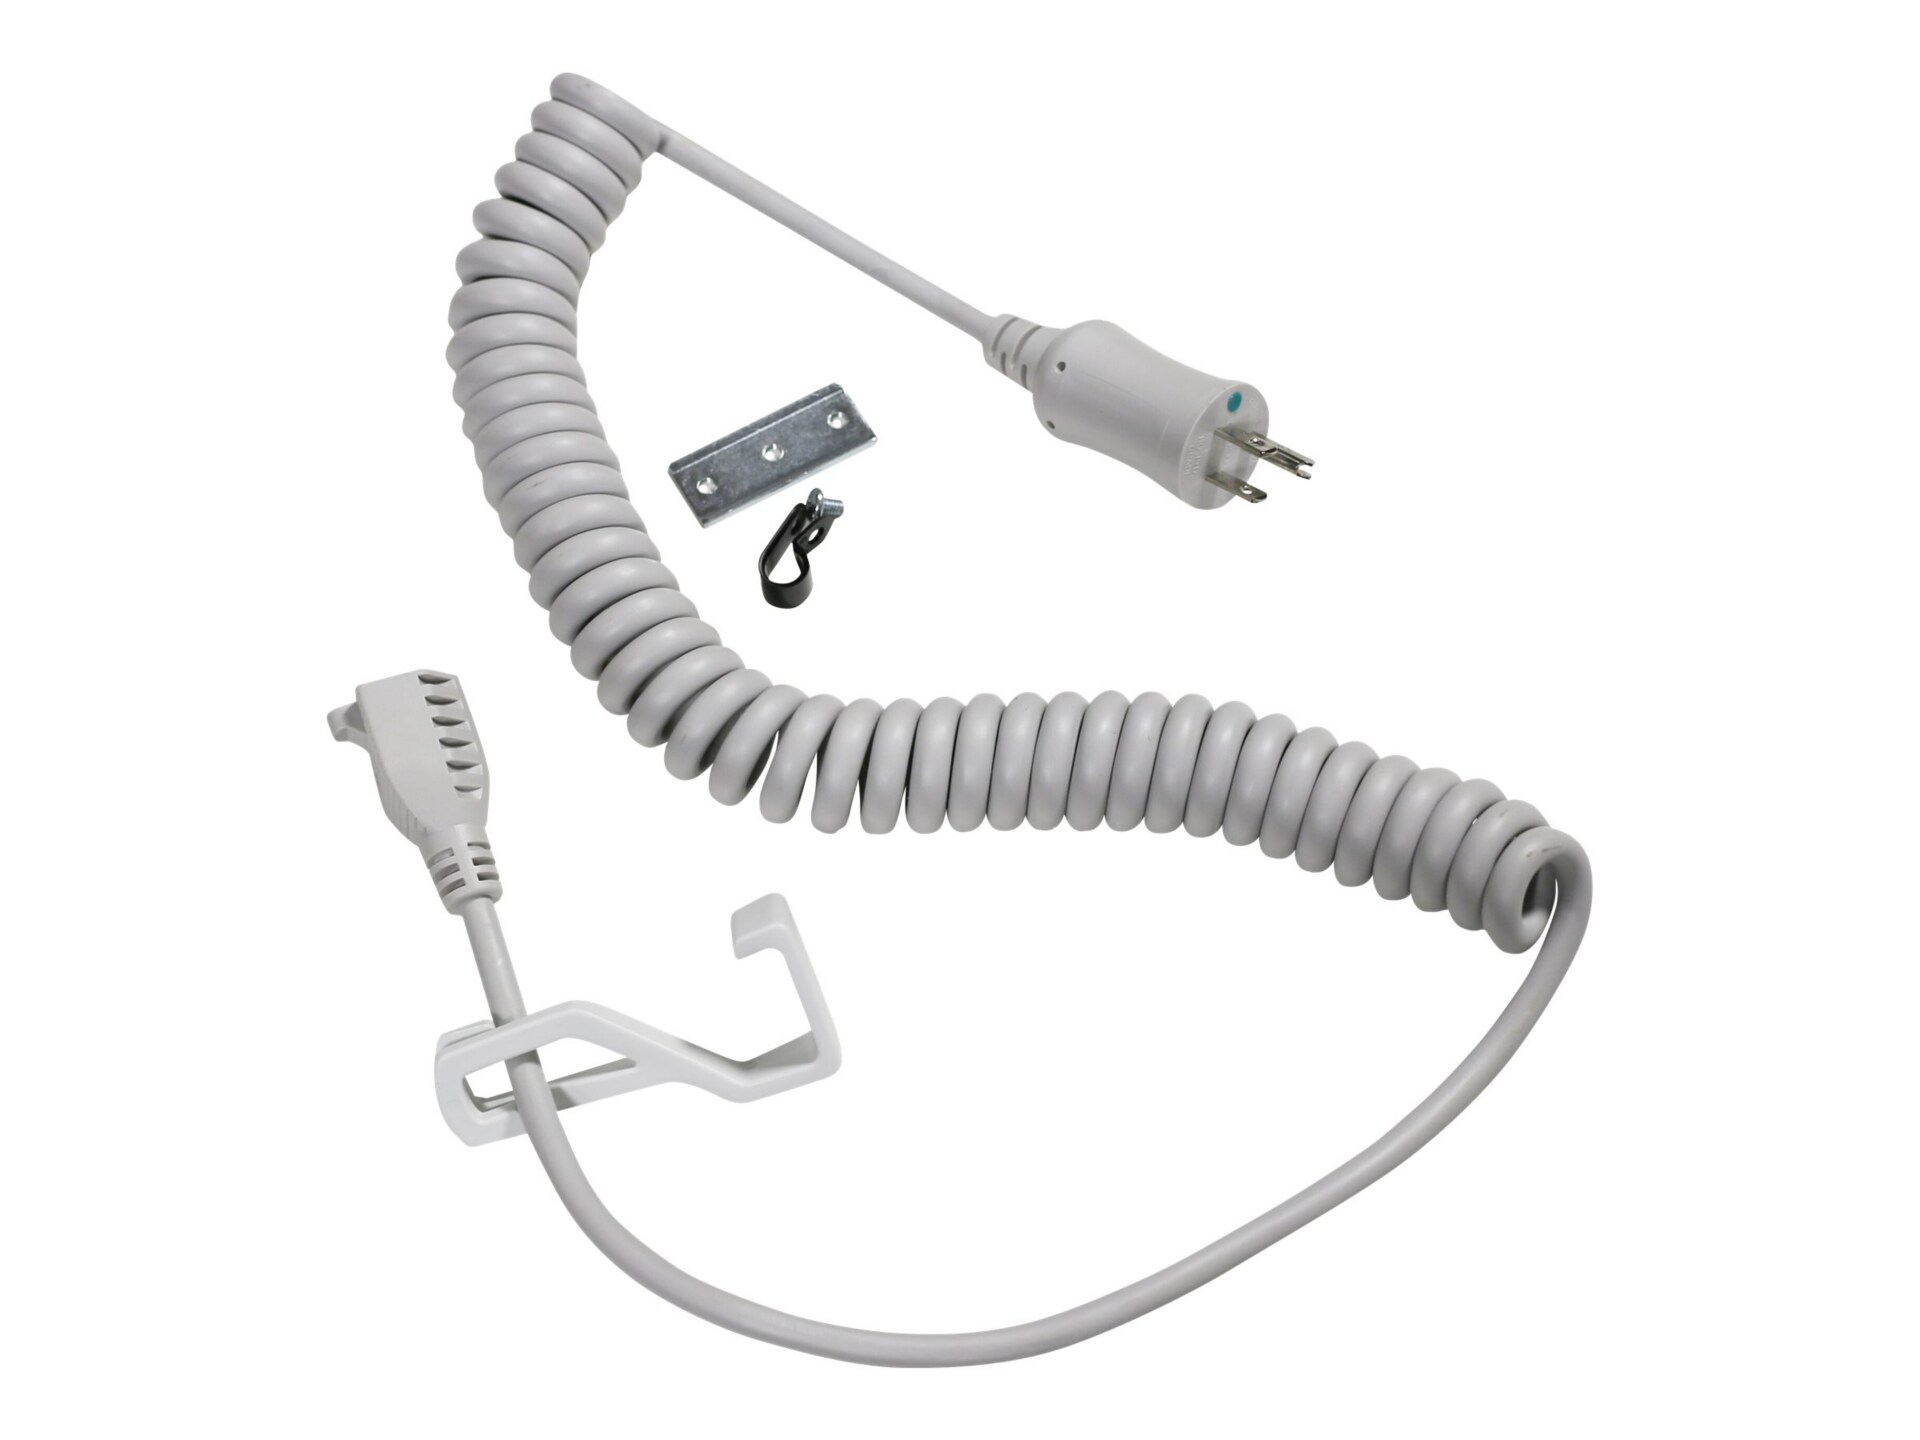 Ergotron Coiled Extension Cord Accessory Kit - rallonge de câble d'alimentation - NEMA 5-15 pour NEMA 5-15 - 2.4 m